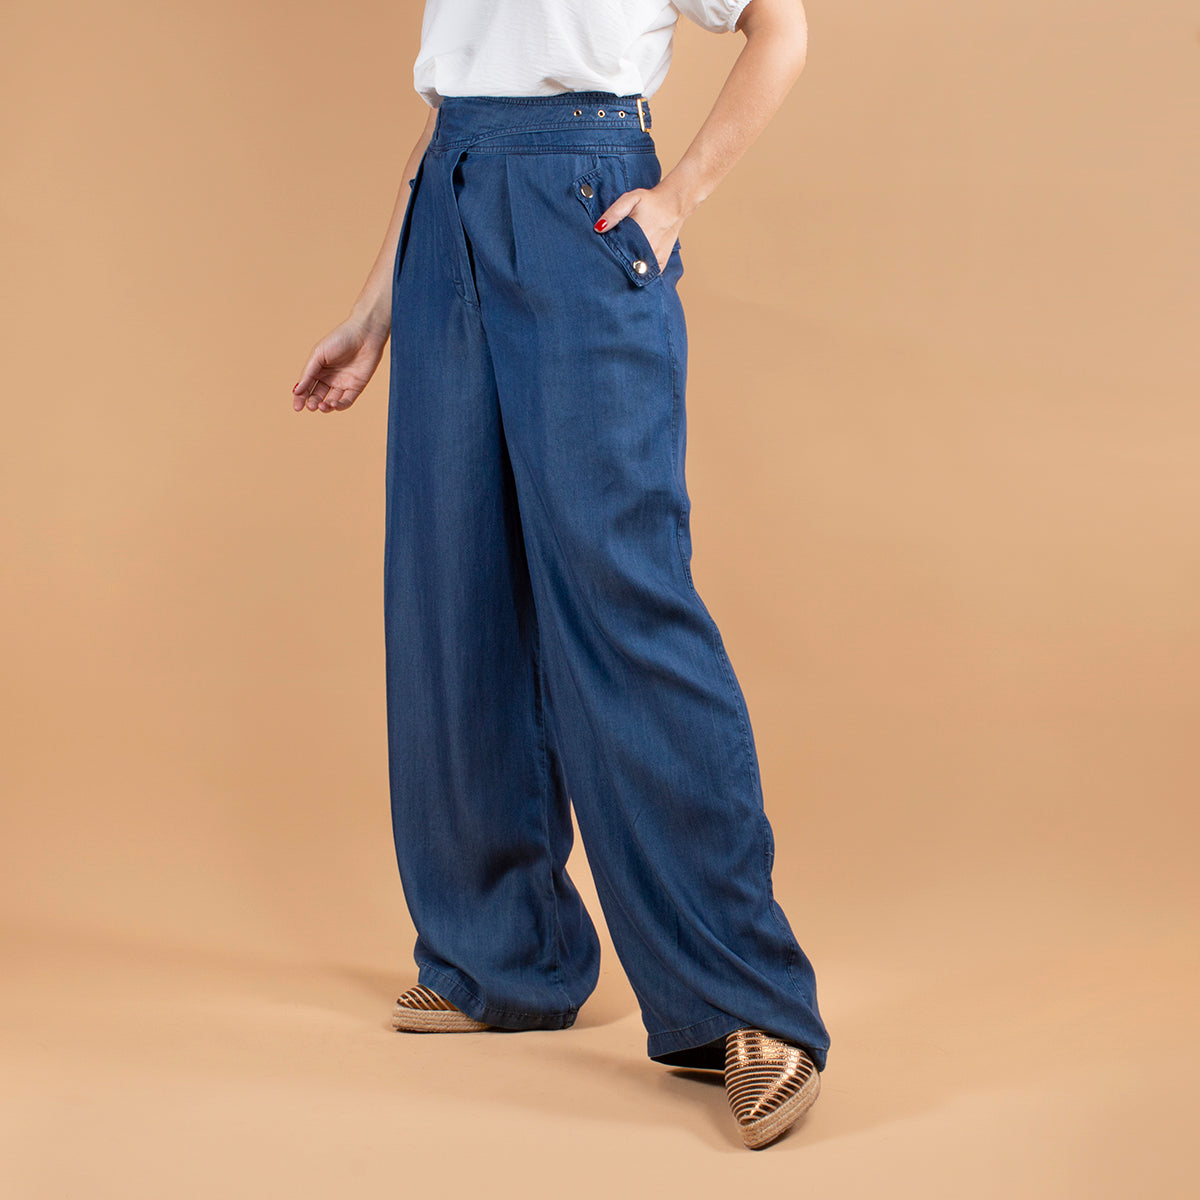 Pantalón color azul con botones laterales